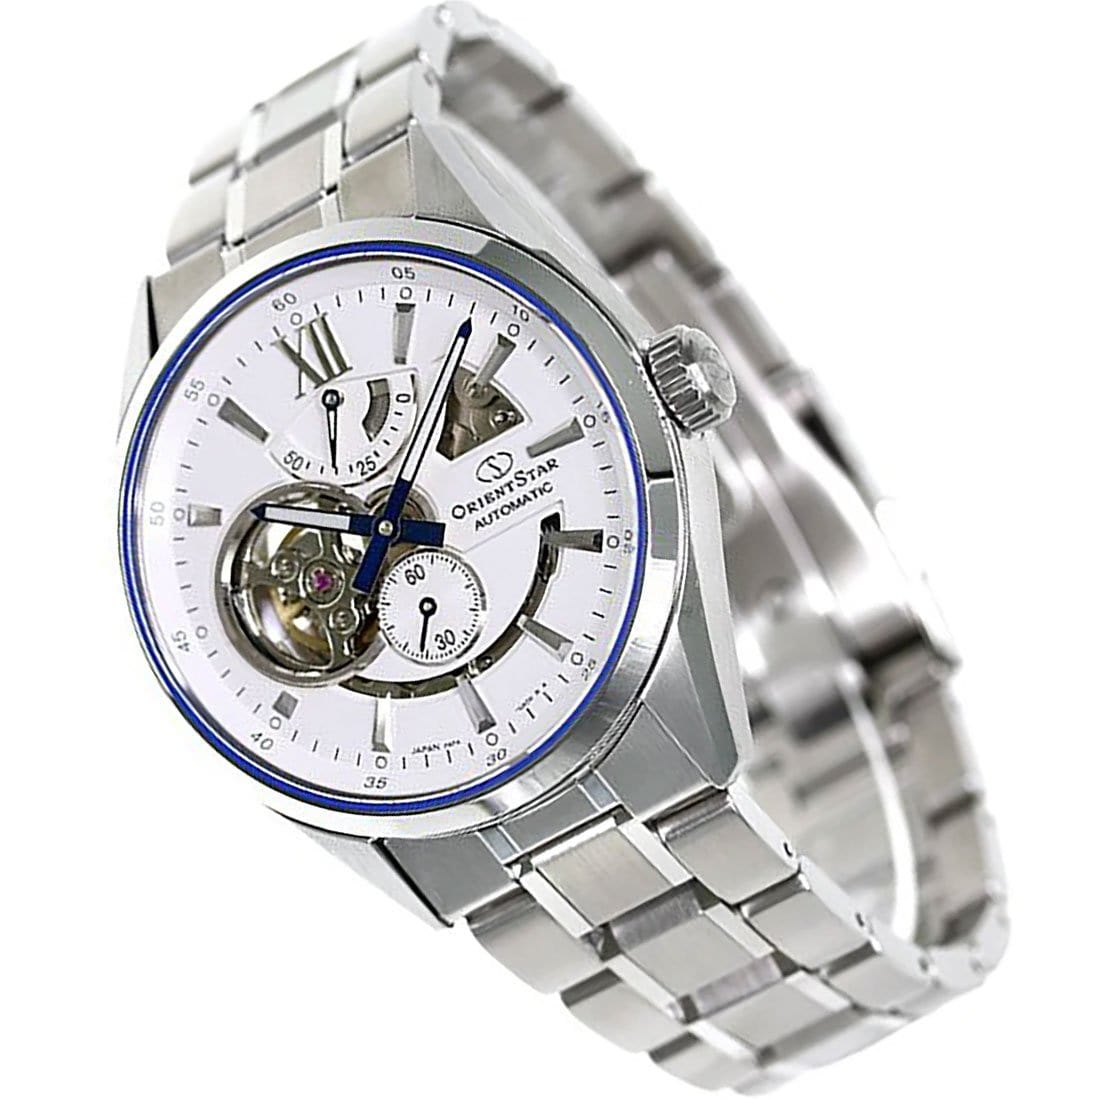 Orient Star Made in Japan Automatic Open Heart Watch RE-AV0113S00B RE-AV0113S